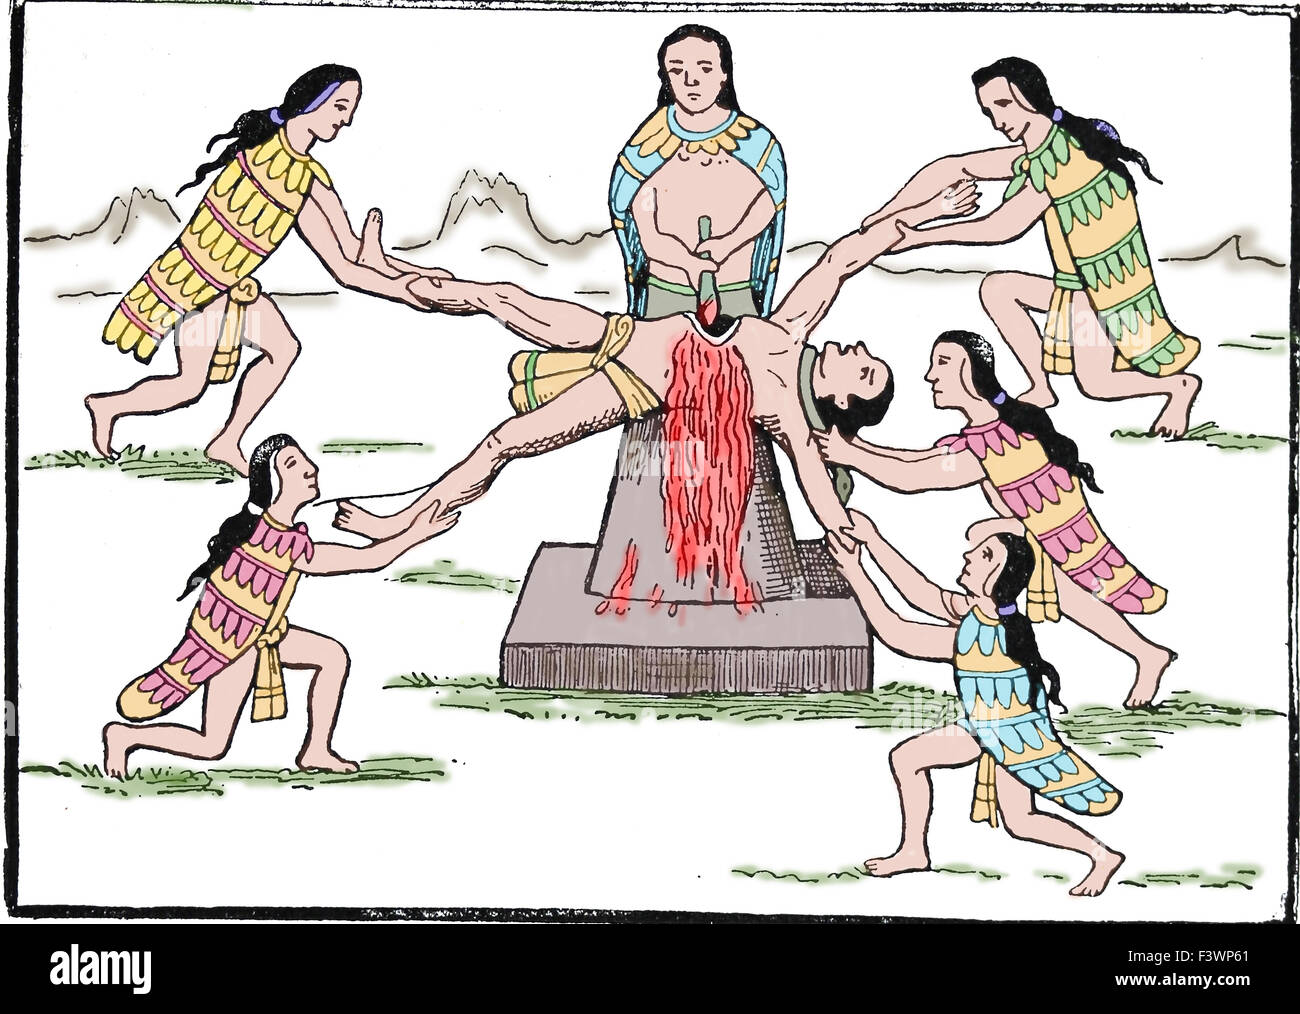 Aztec human sacrifice. Historia de los Indios by Diego Duran, 1579. Engraving, 19th century. Stock Photo